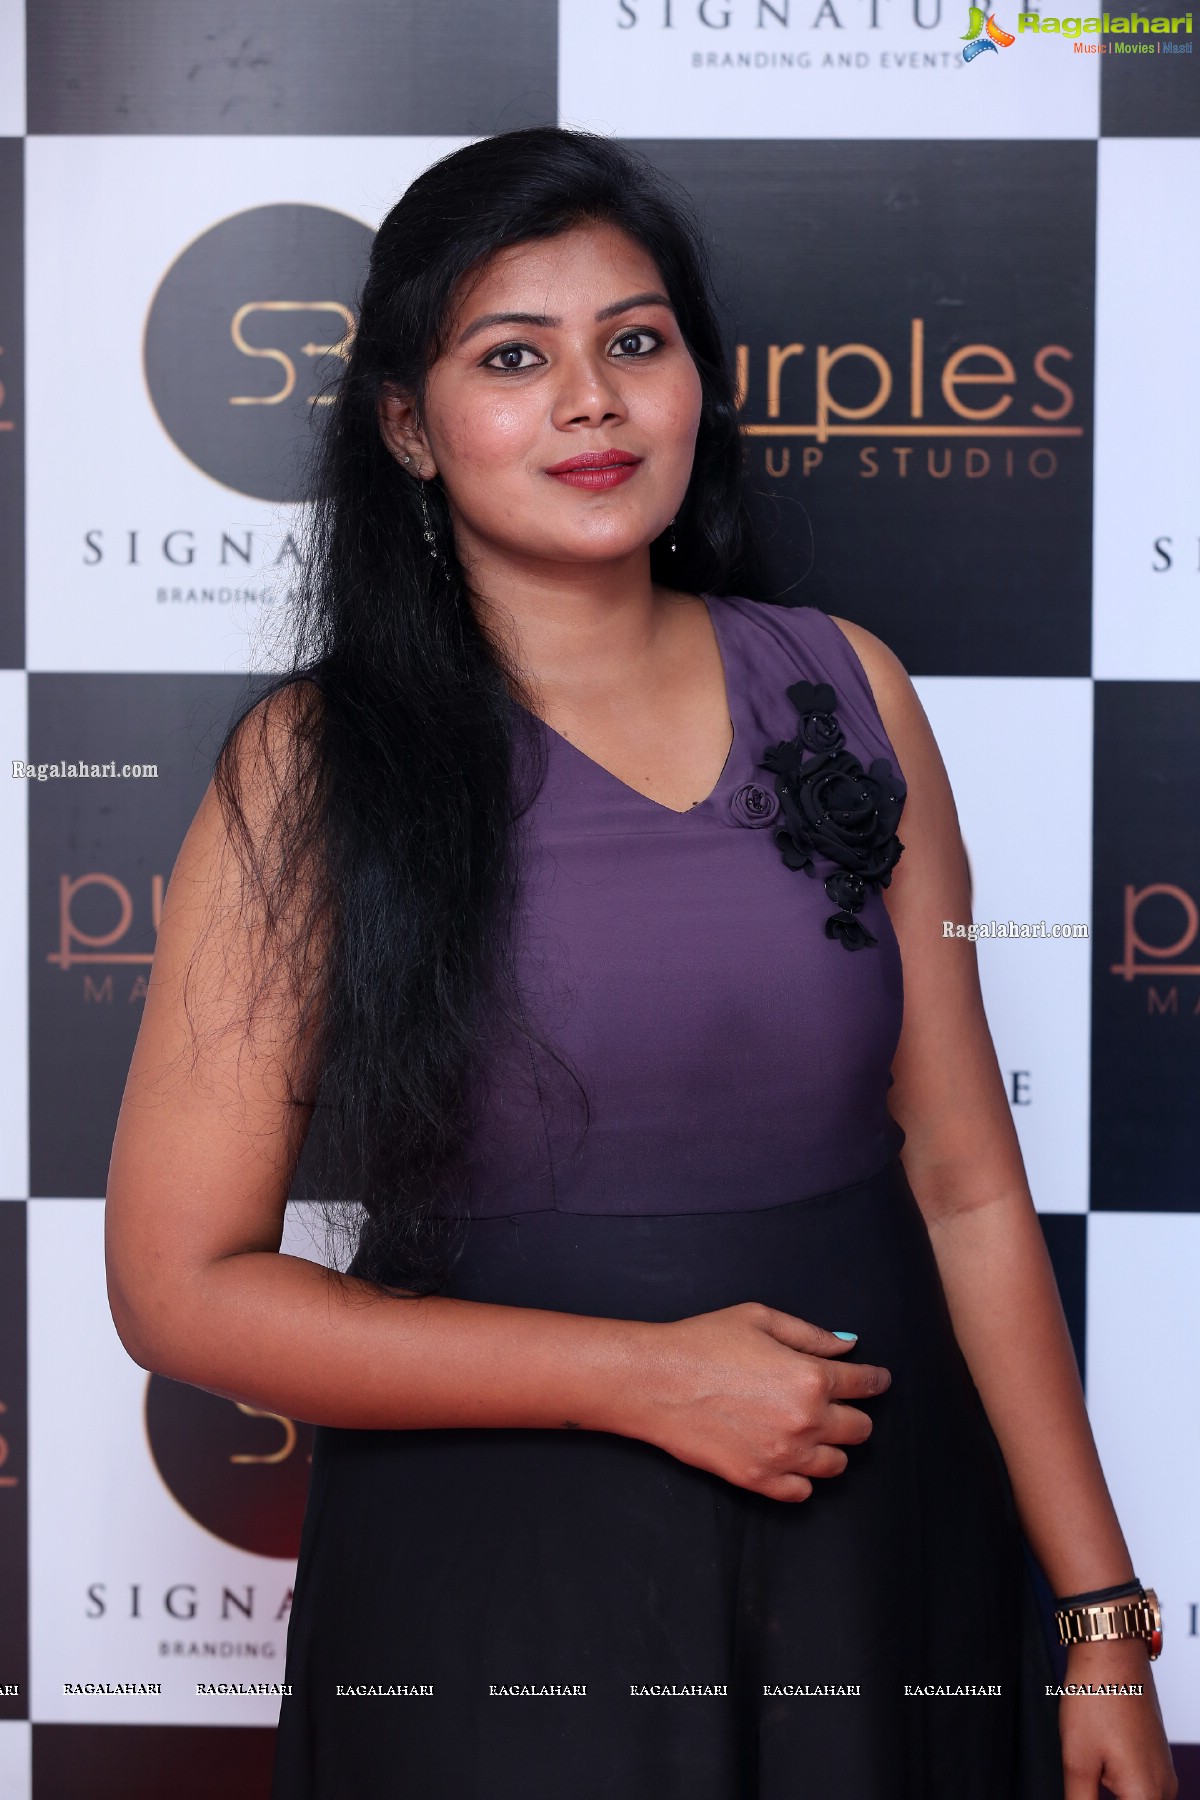 Purples Makeup Studio Launch At Film Nagar